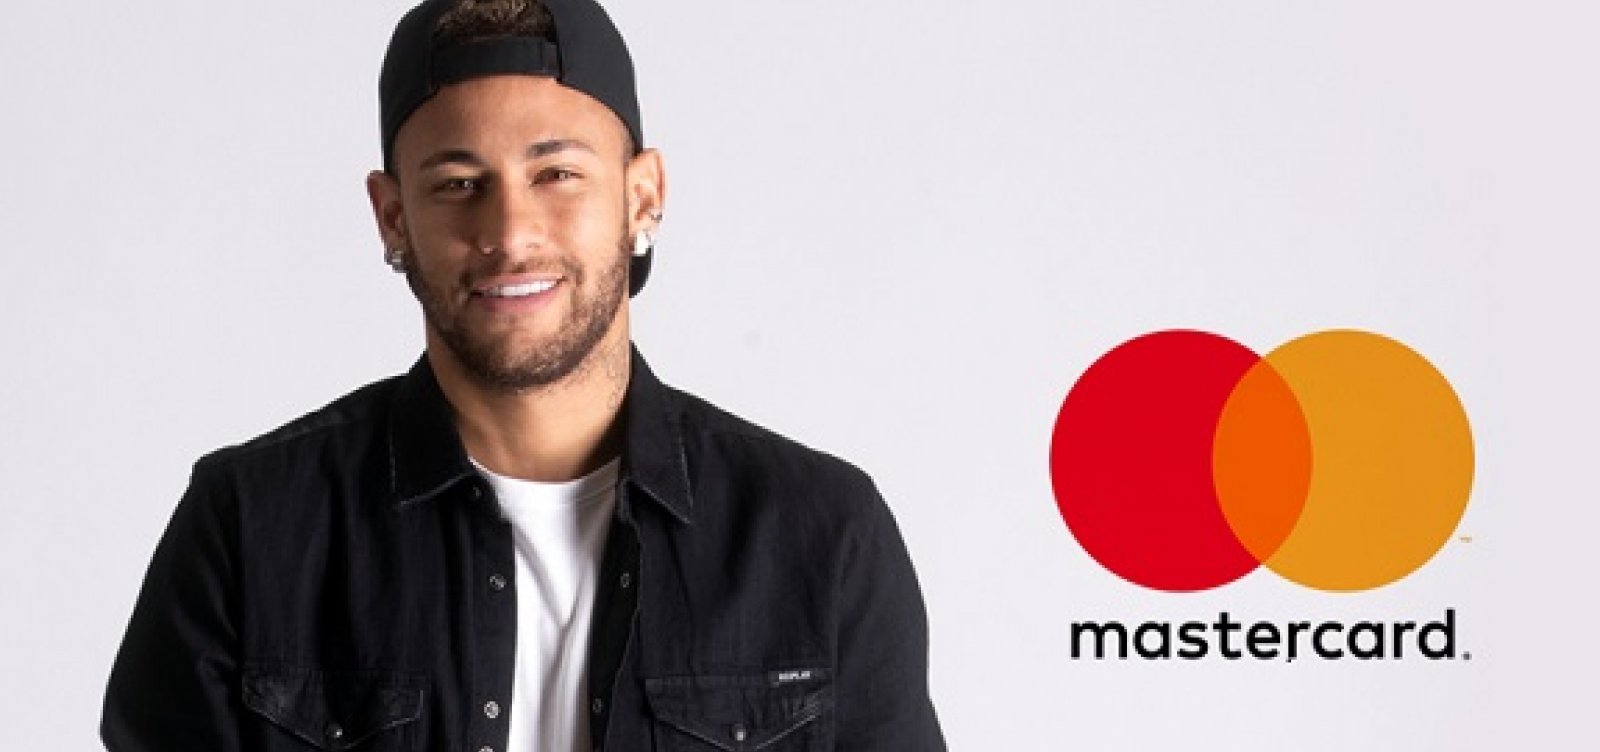 Mastercard suspende campanha com Neymar após acusação de estupro